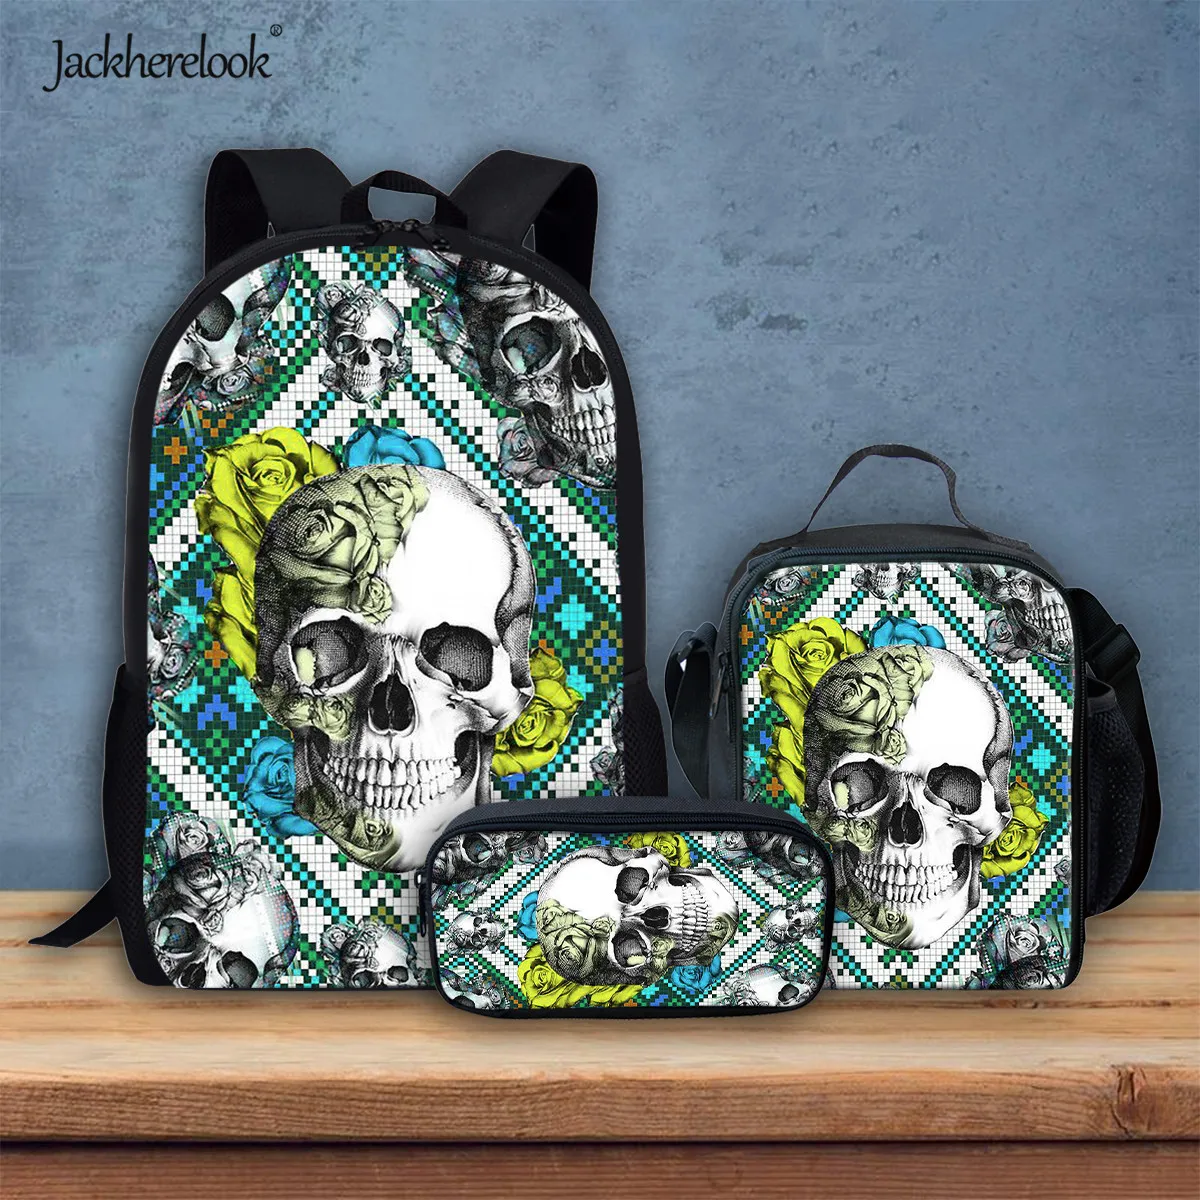 

Jackherelook Cool Skull Rose Print Junior Student Schoolbag Backpack Lage Capacity Teenager Bookbag Durable School Bags 3pcs/Set